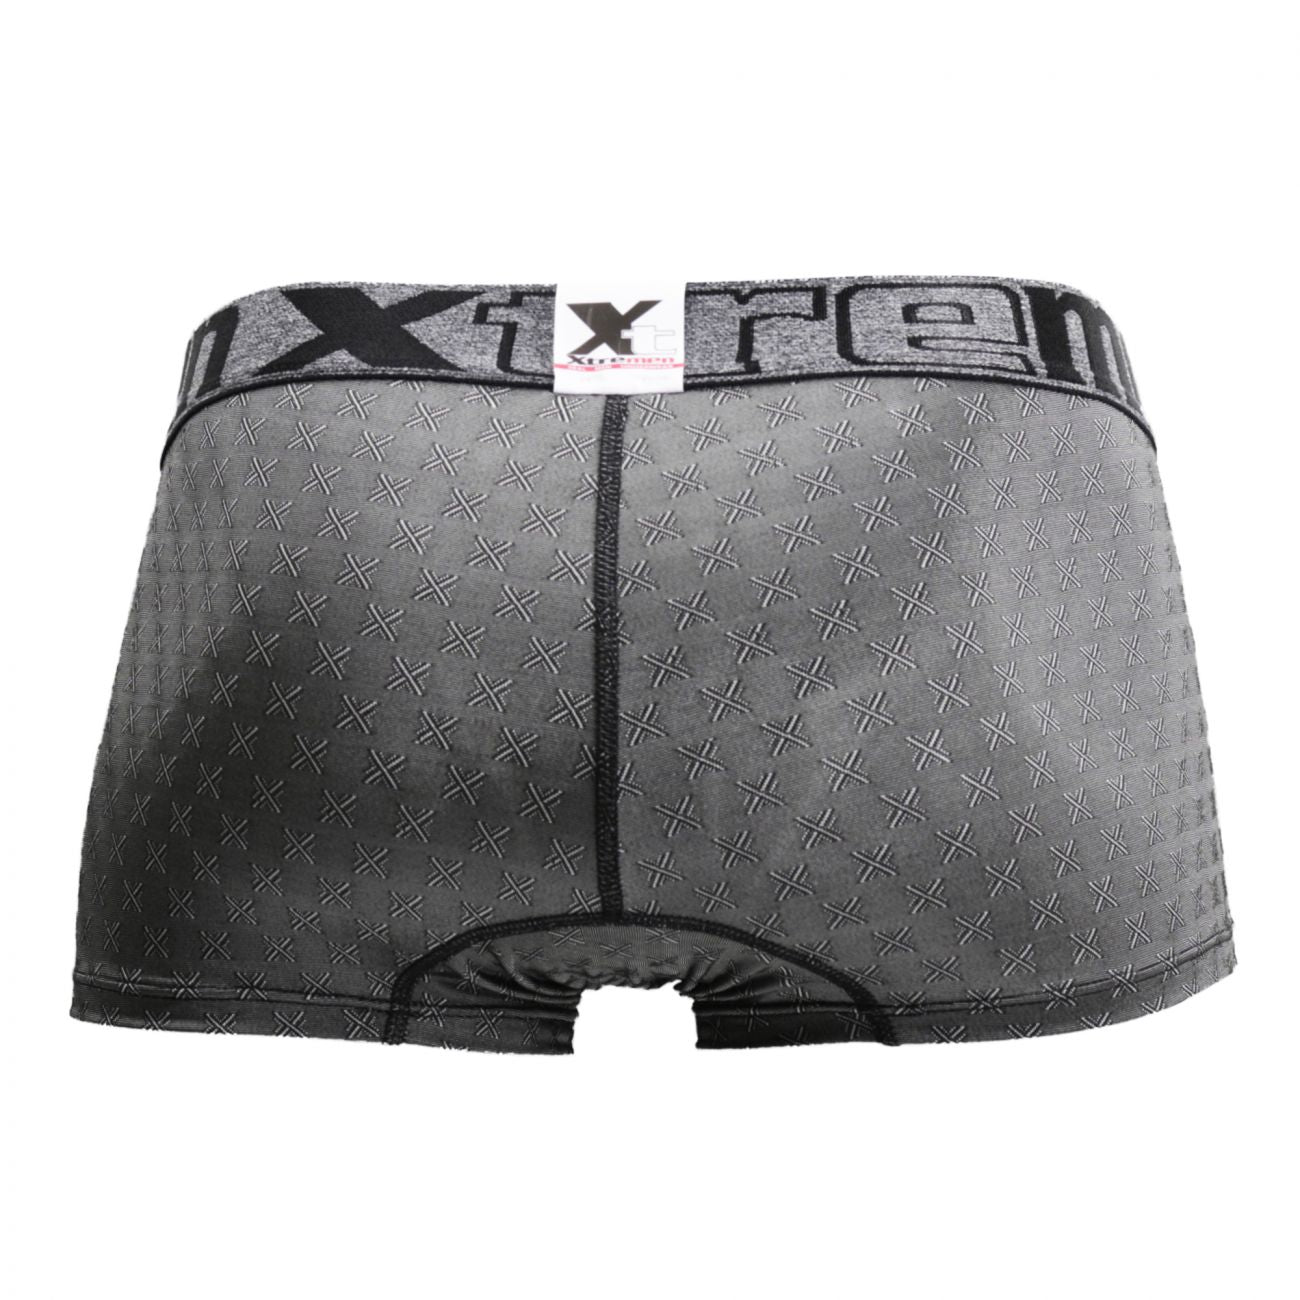 Xtremen 51442C Jacquard -X- Boxer Briefs Color Black